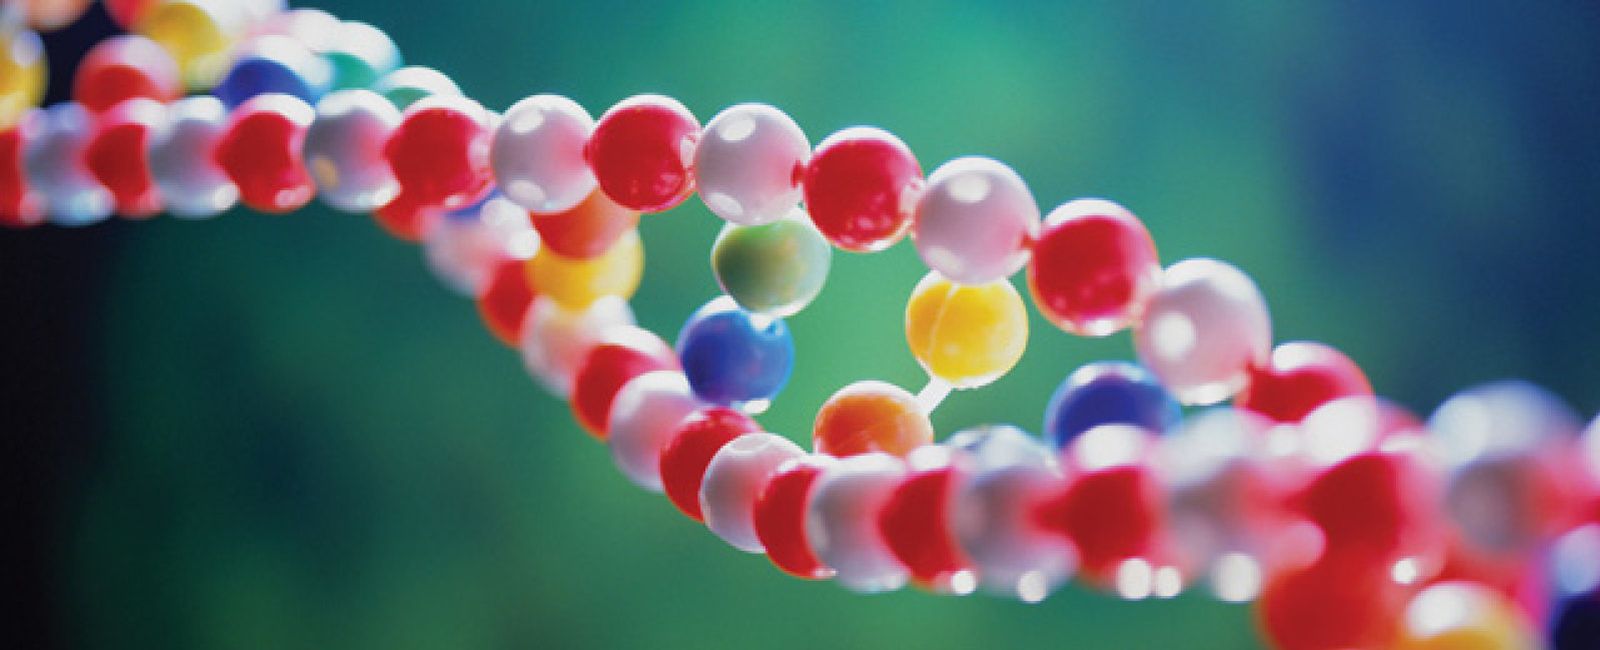 Foto: El genoma humano, objeto del deseo para las multinacionales